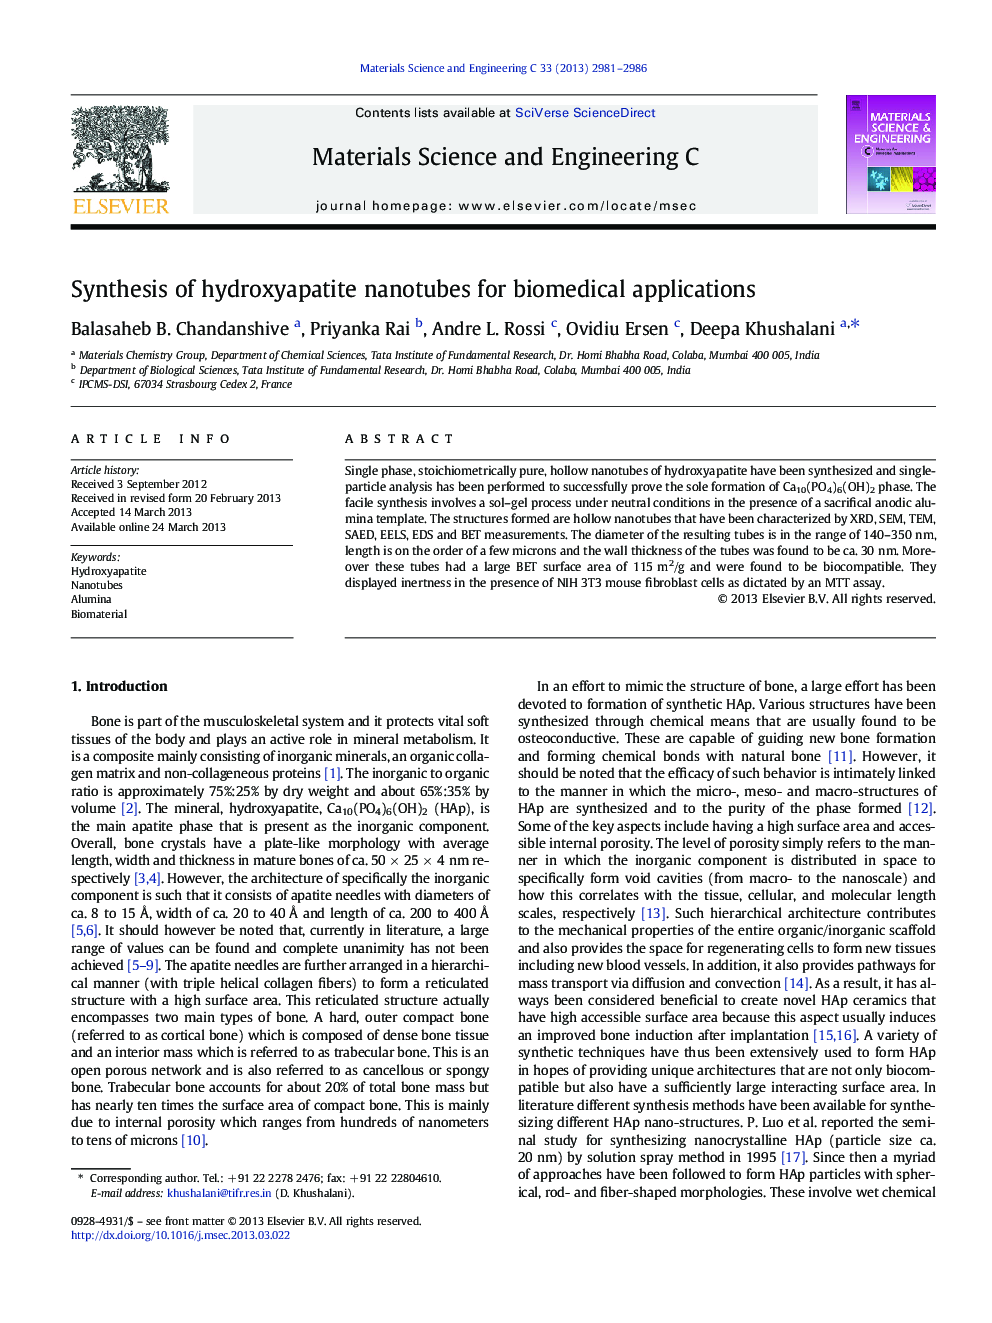 سنتز نانولوله های هیدروکسی آپاتیت برای کاربردهای بیومدیکال 